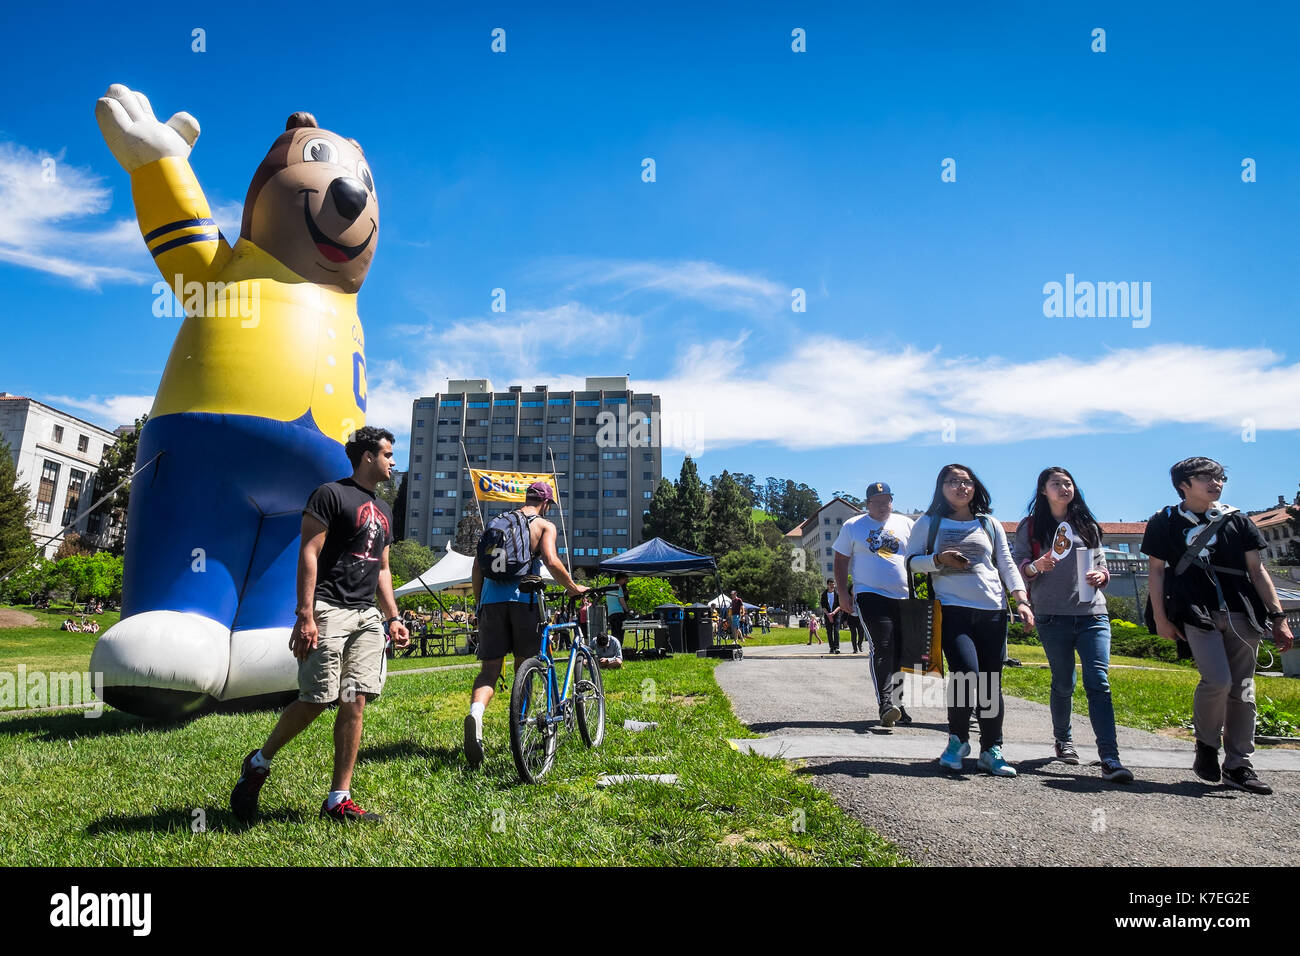 BERKELEY, CA- Apr 16, 2016: la Universidad de California Berkeley mascota inflable enorme el Oso Oski saluda a alumnos de nuevo ingreso en el día de cal. Foto de stock